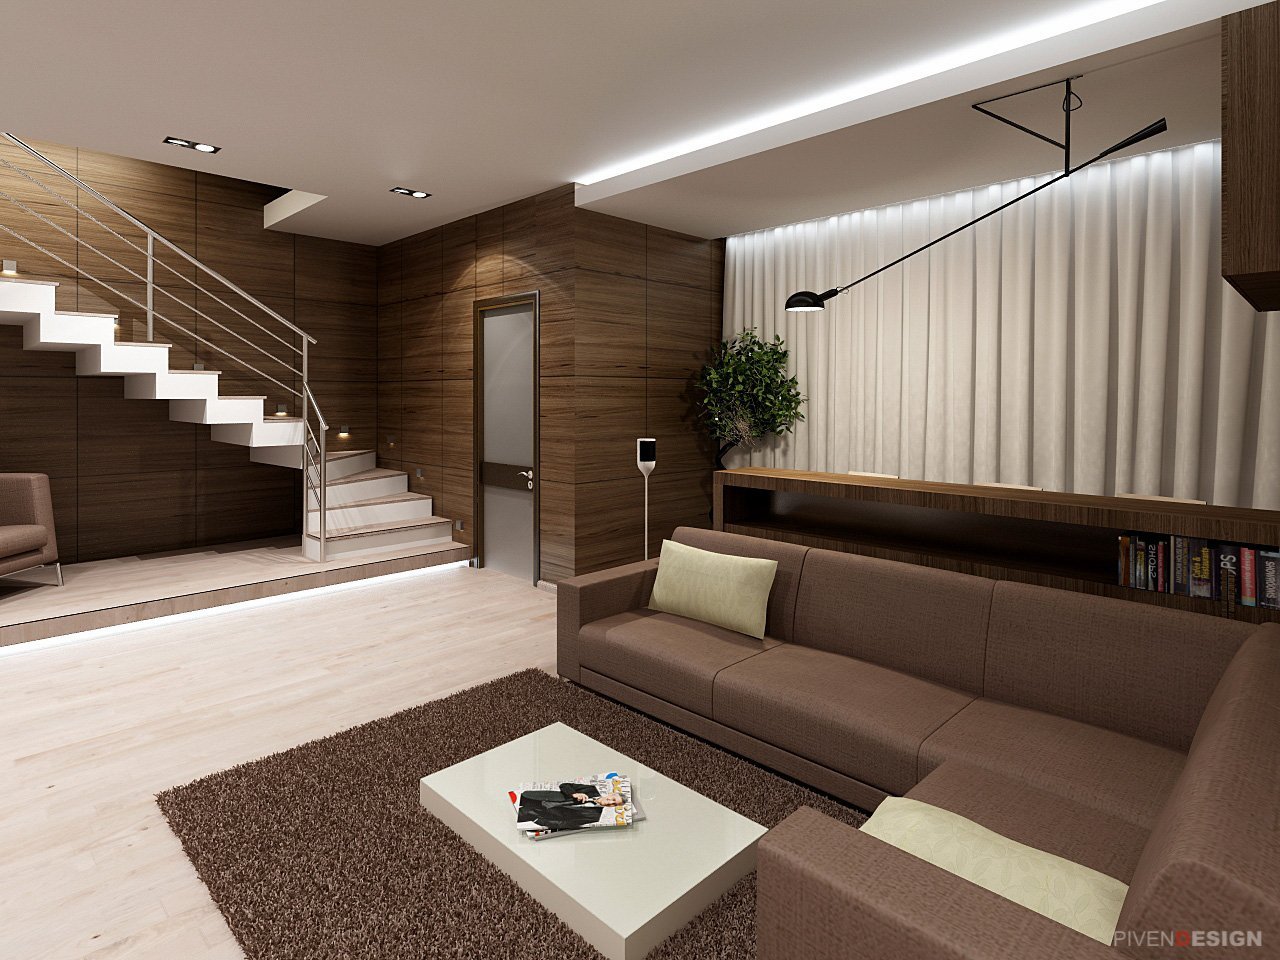 Интерьер небольшого частного дома – 28 фото дизайна интерьера комнат в доме